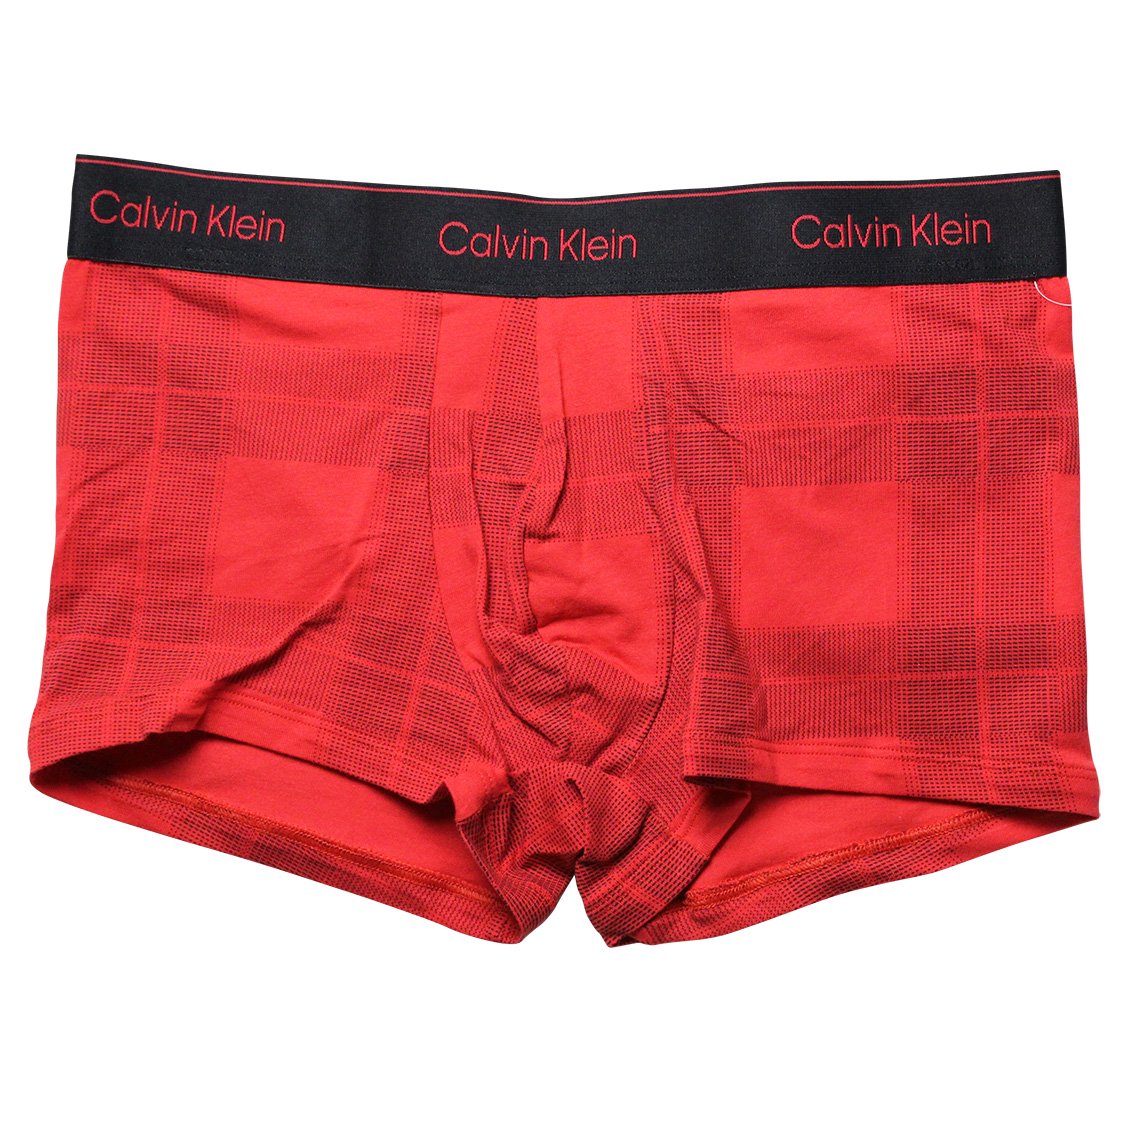 Calvin Klein(カルバンクライン)[NB3359-620]:ボクサーパンツ,男性下着 